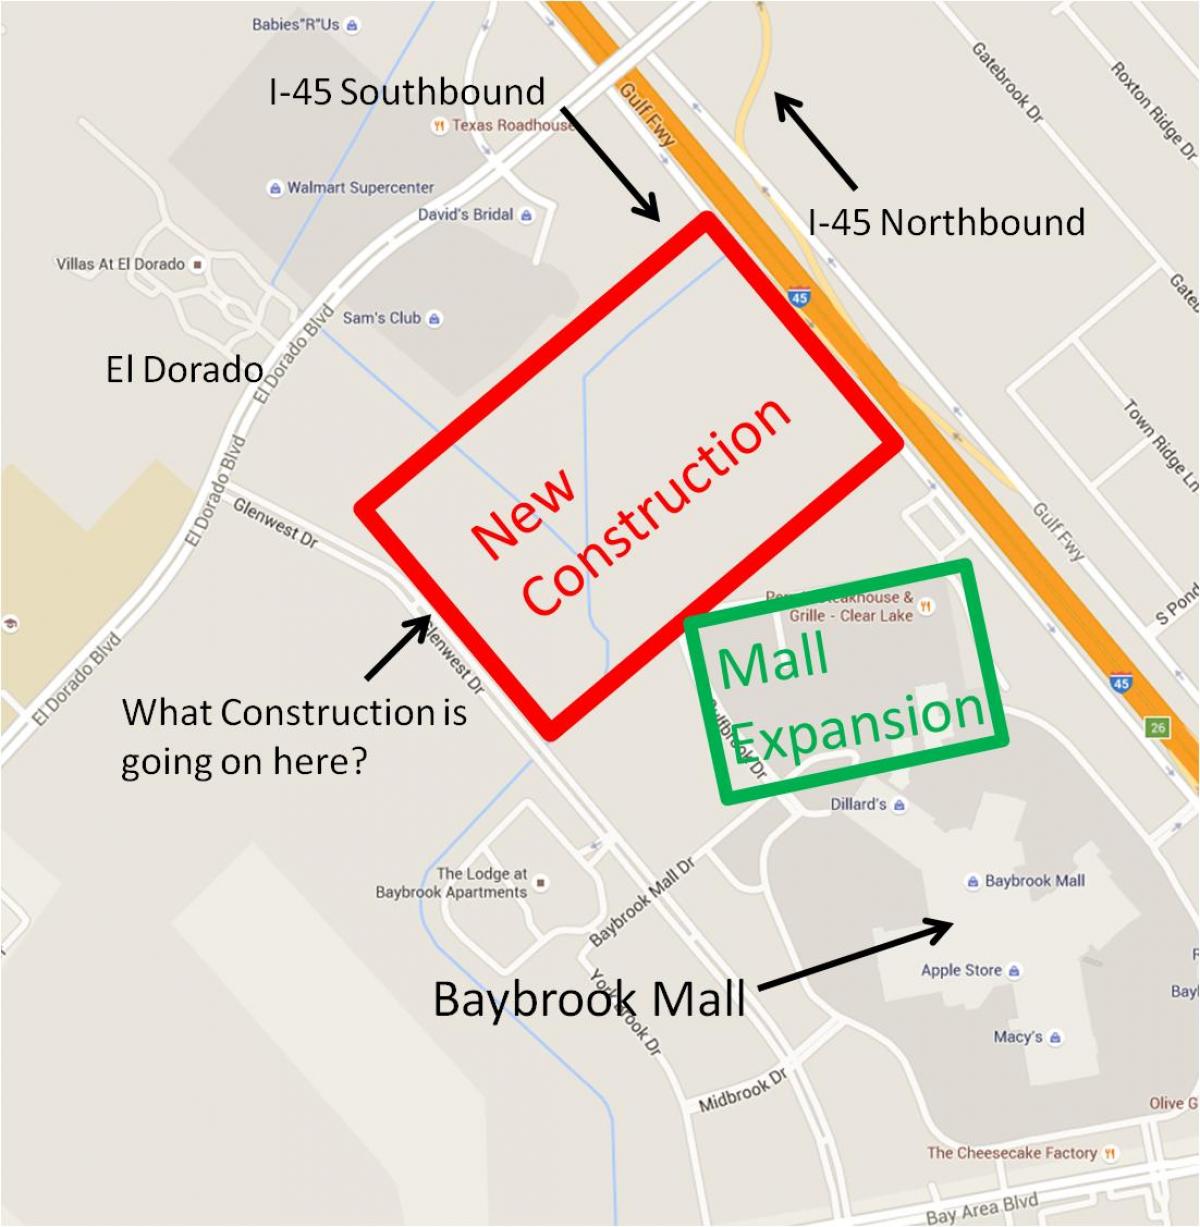 térkép Baybrook mall